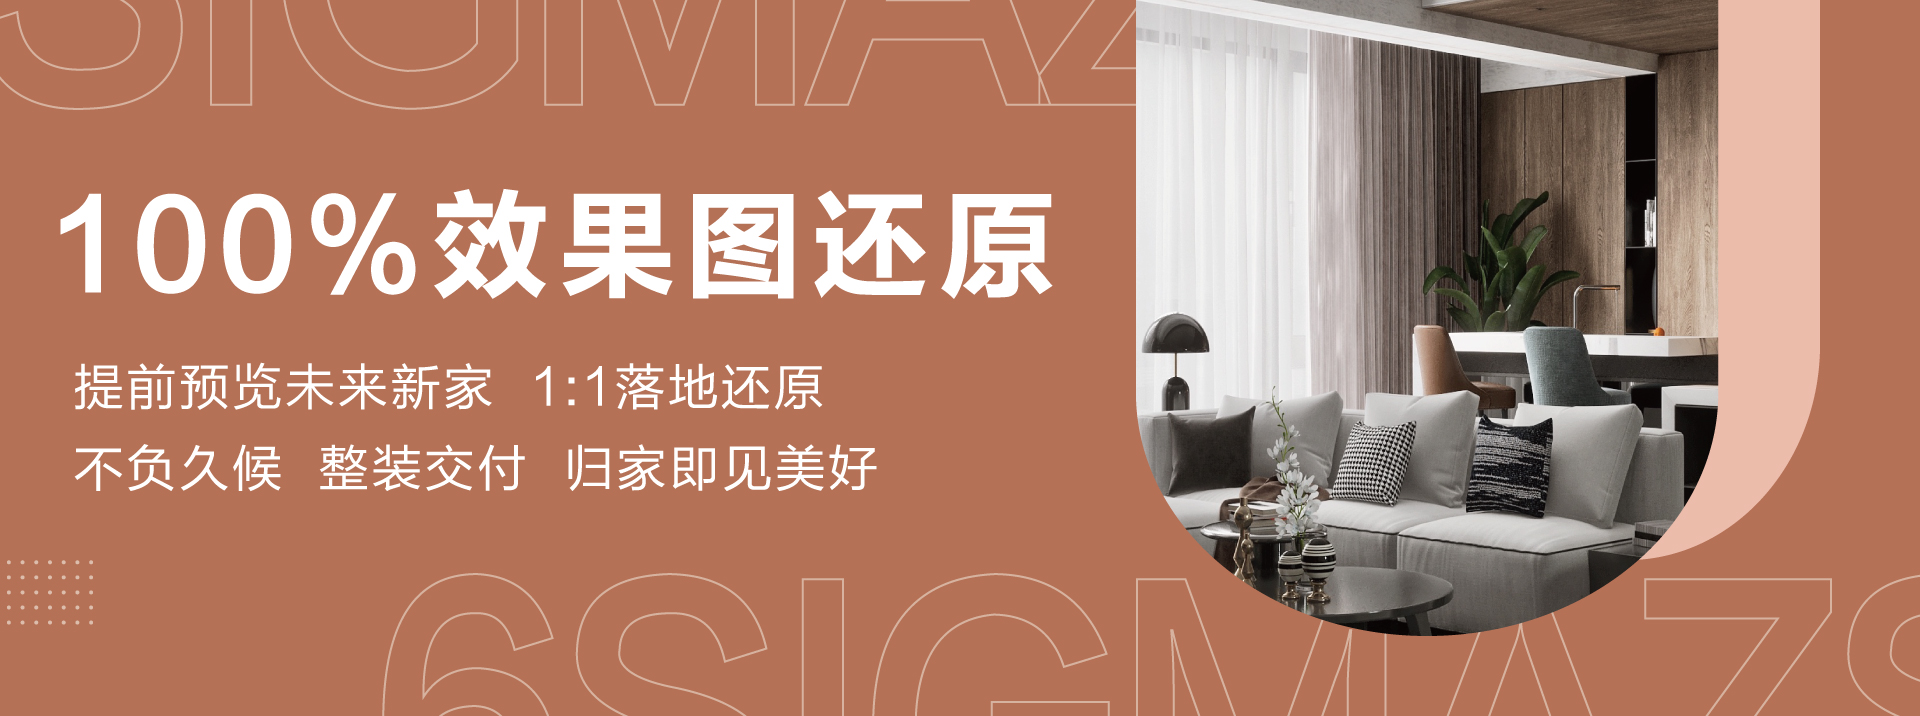 中国小妞大战黑屌六西格玛装饰活动海报